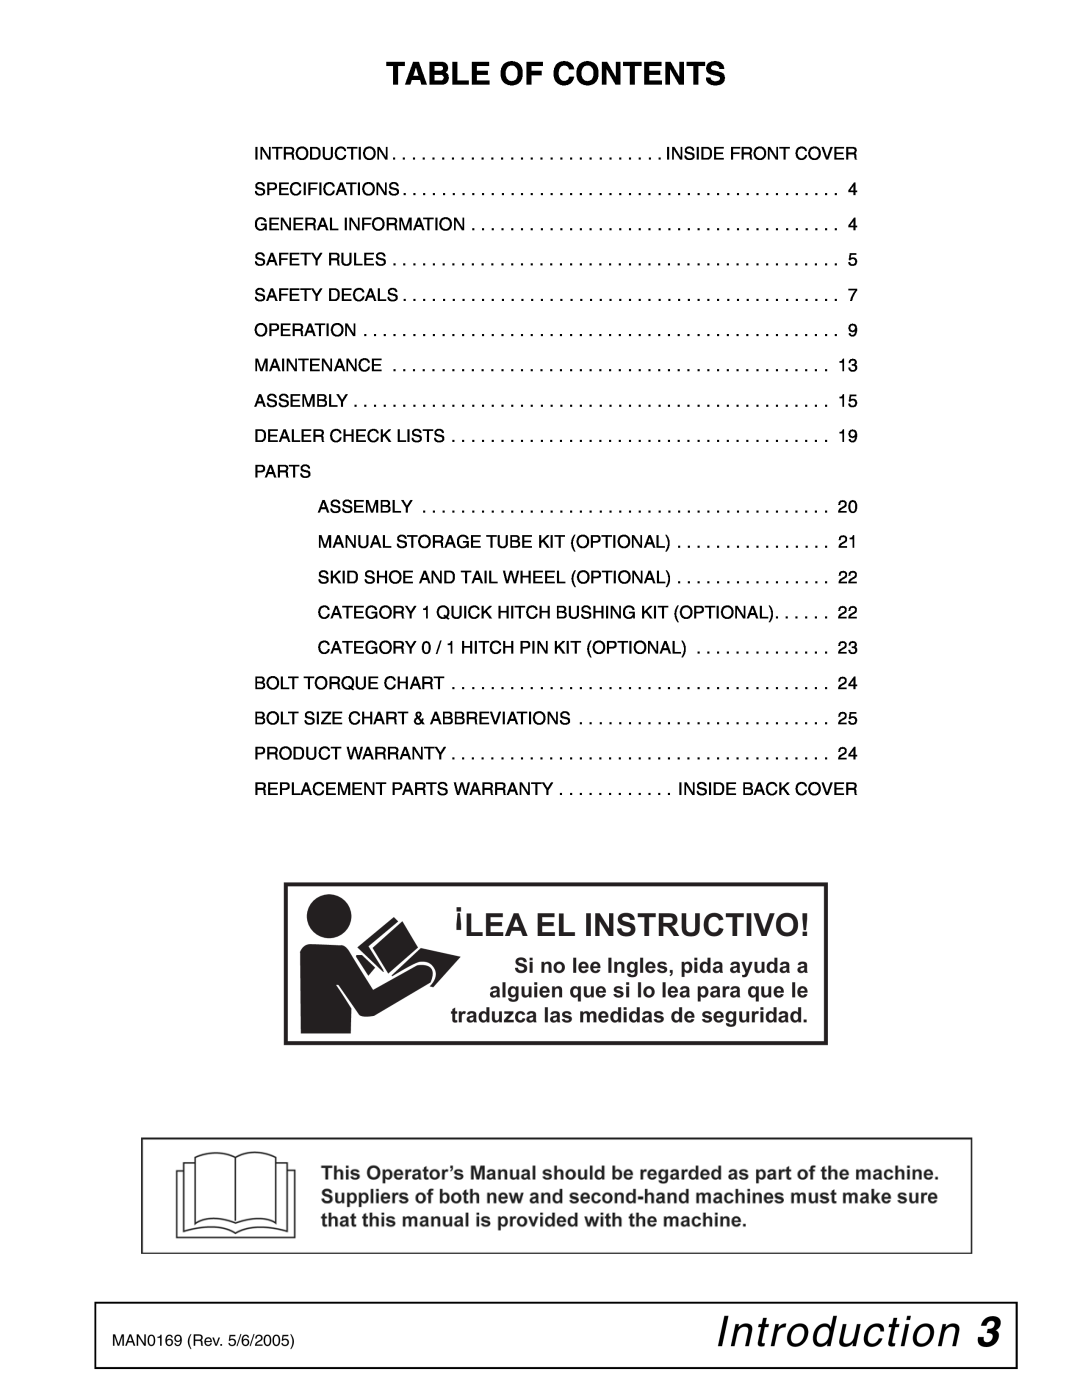 Woods Equipment RBC60 LRC60 manual Introduction, Table Of Contents, Lea El Instructivo 